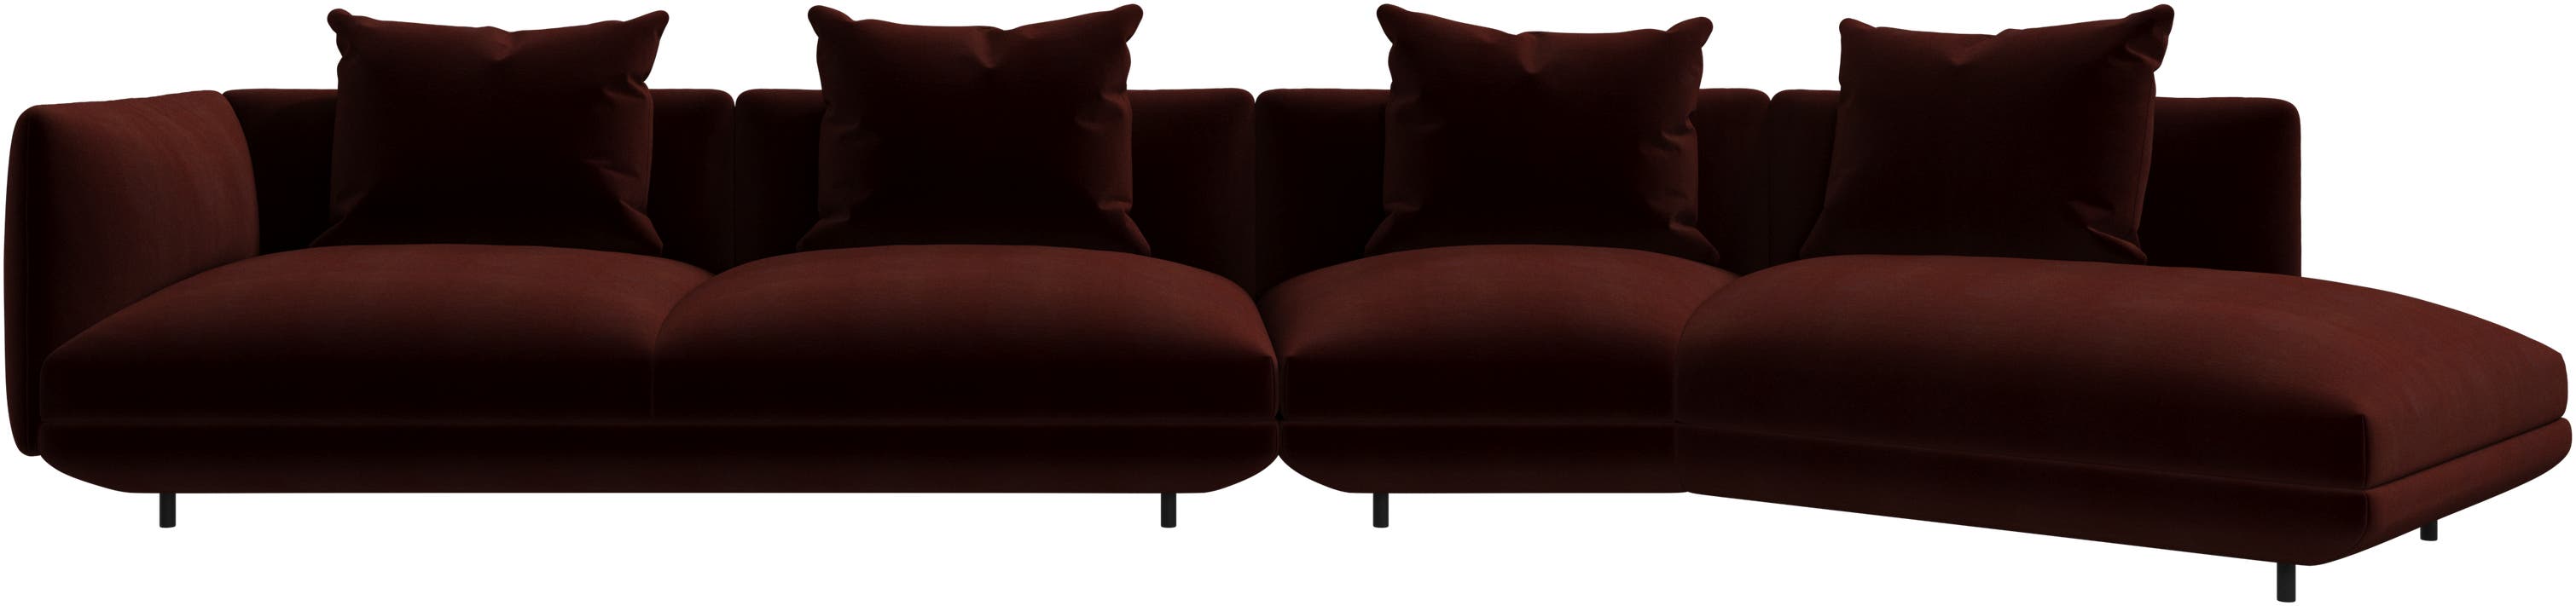 Salamanca 4 seater lounge sofa